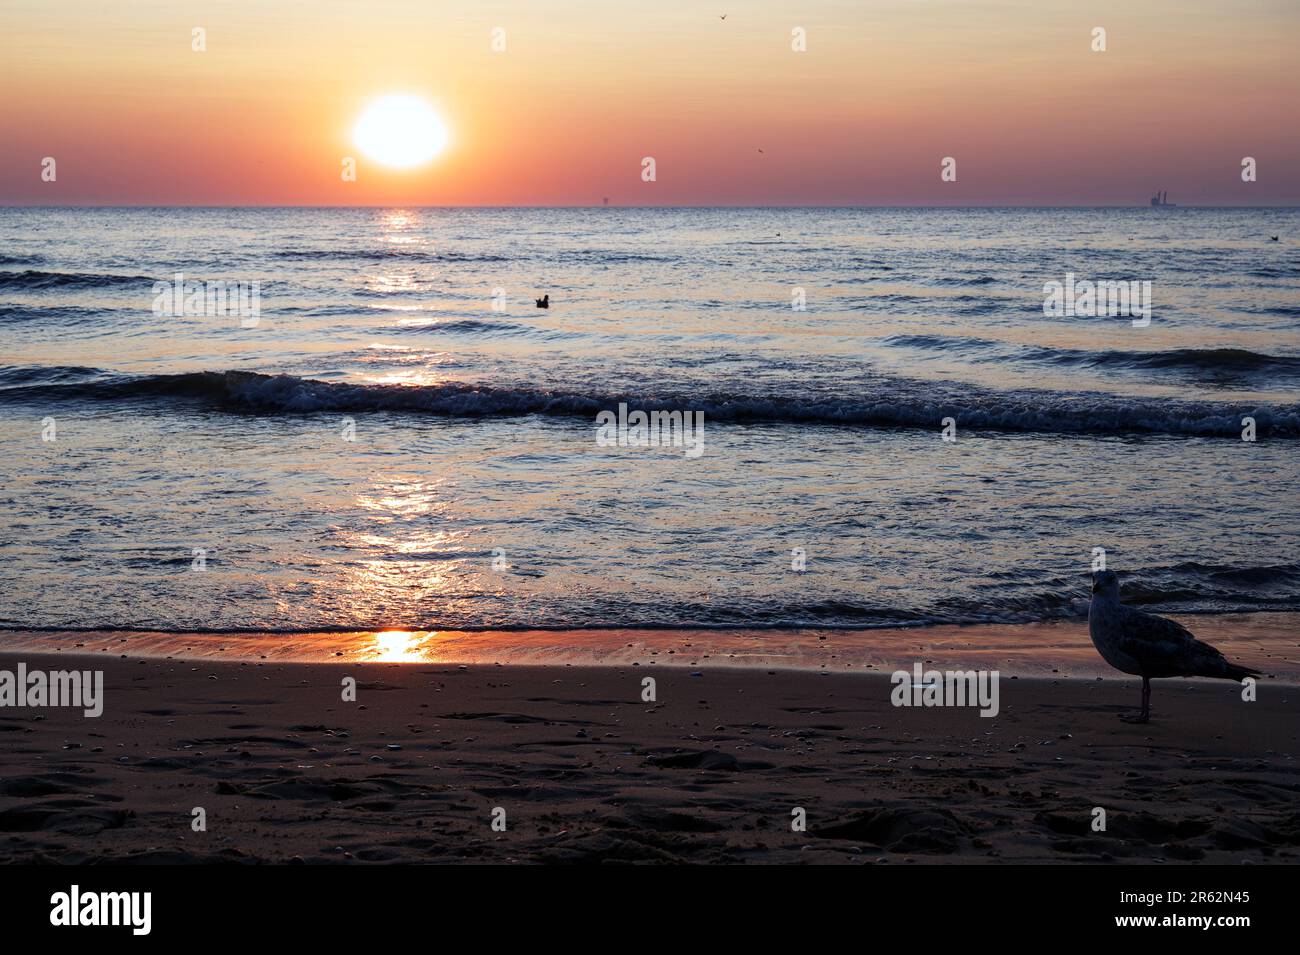 Un gabbiano cammina lungo la costa di una spiaggia tropicale al tramonto, con un cielo arancione e rosa luminoso sullo sfondo Foto Stock